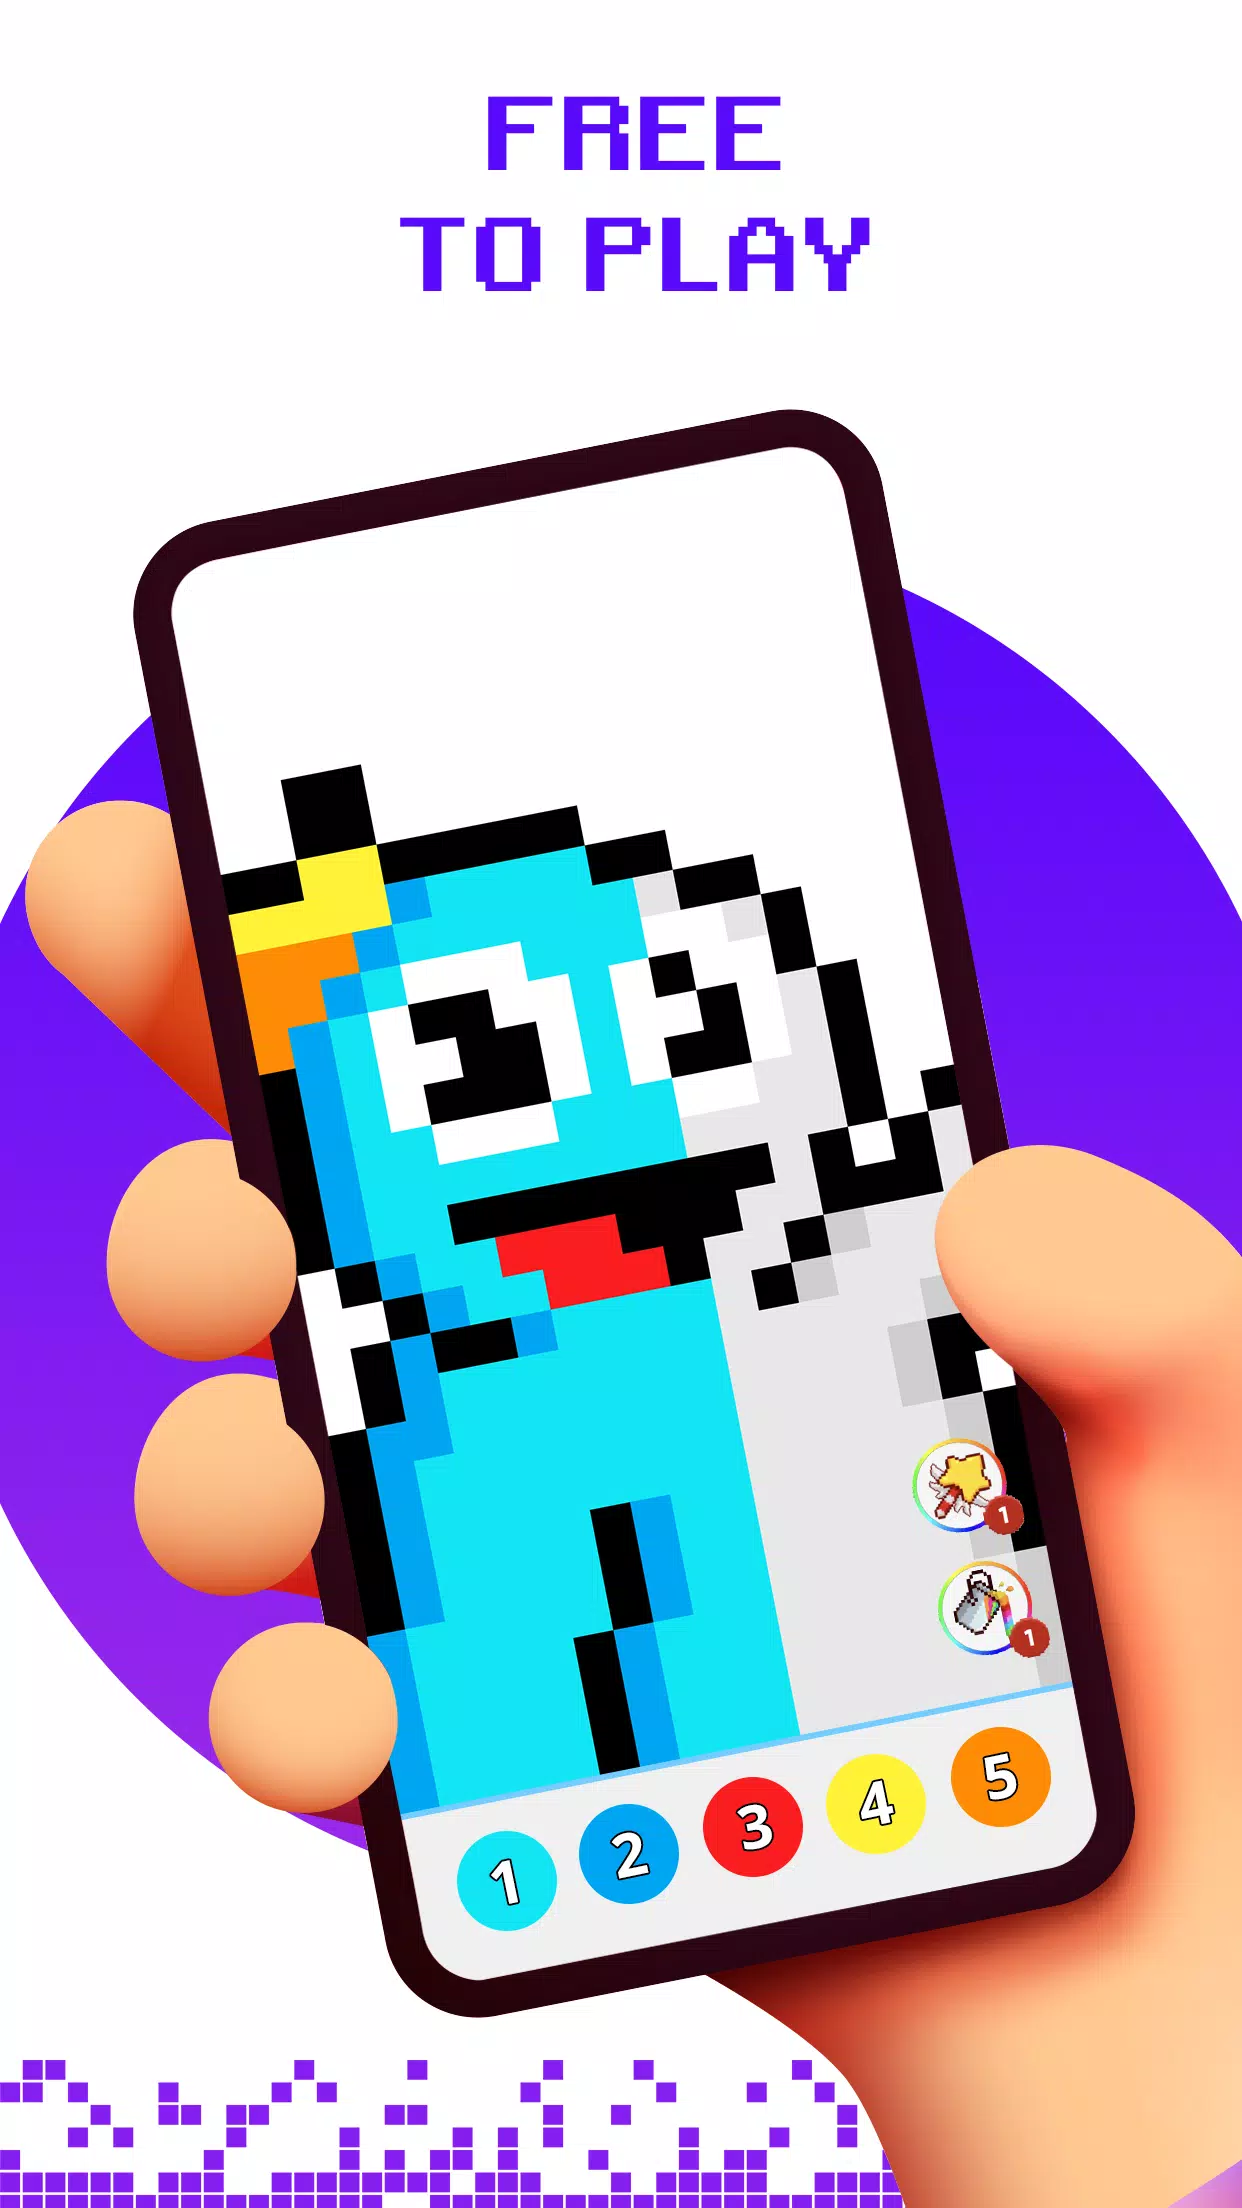 Top 10 FUN PIXEL ART games Android OFFLINE & MULTIPLAYER FUN Pixel